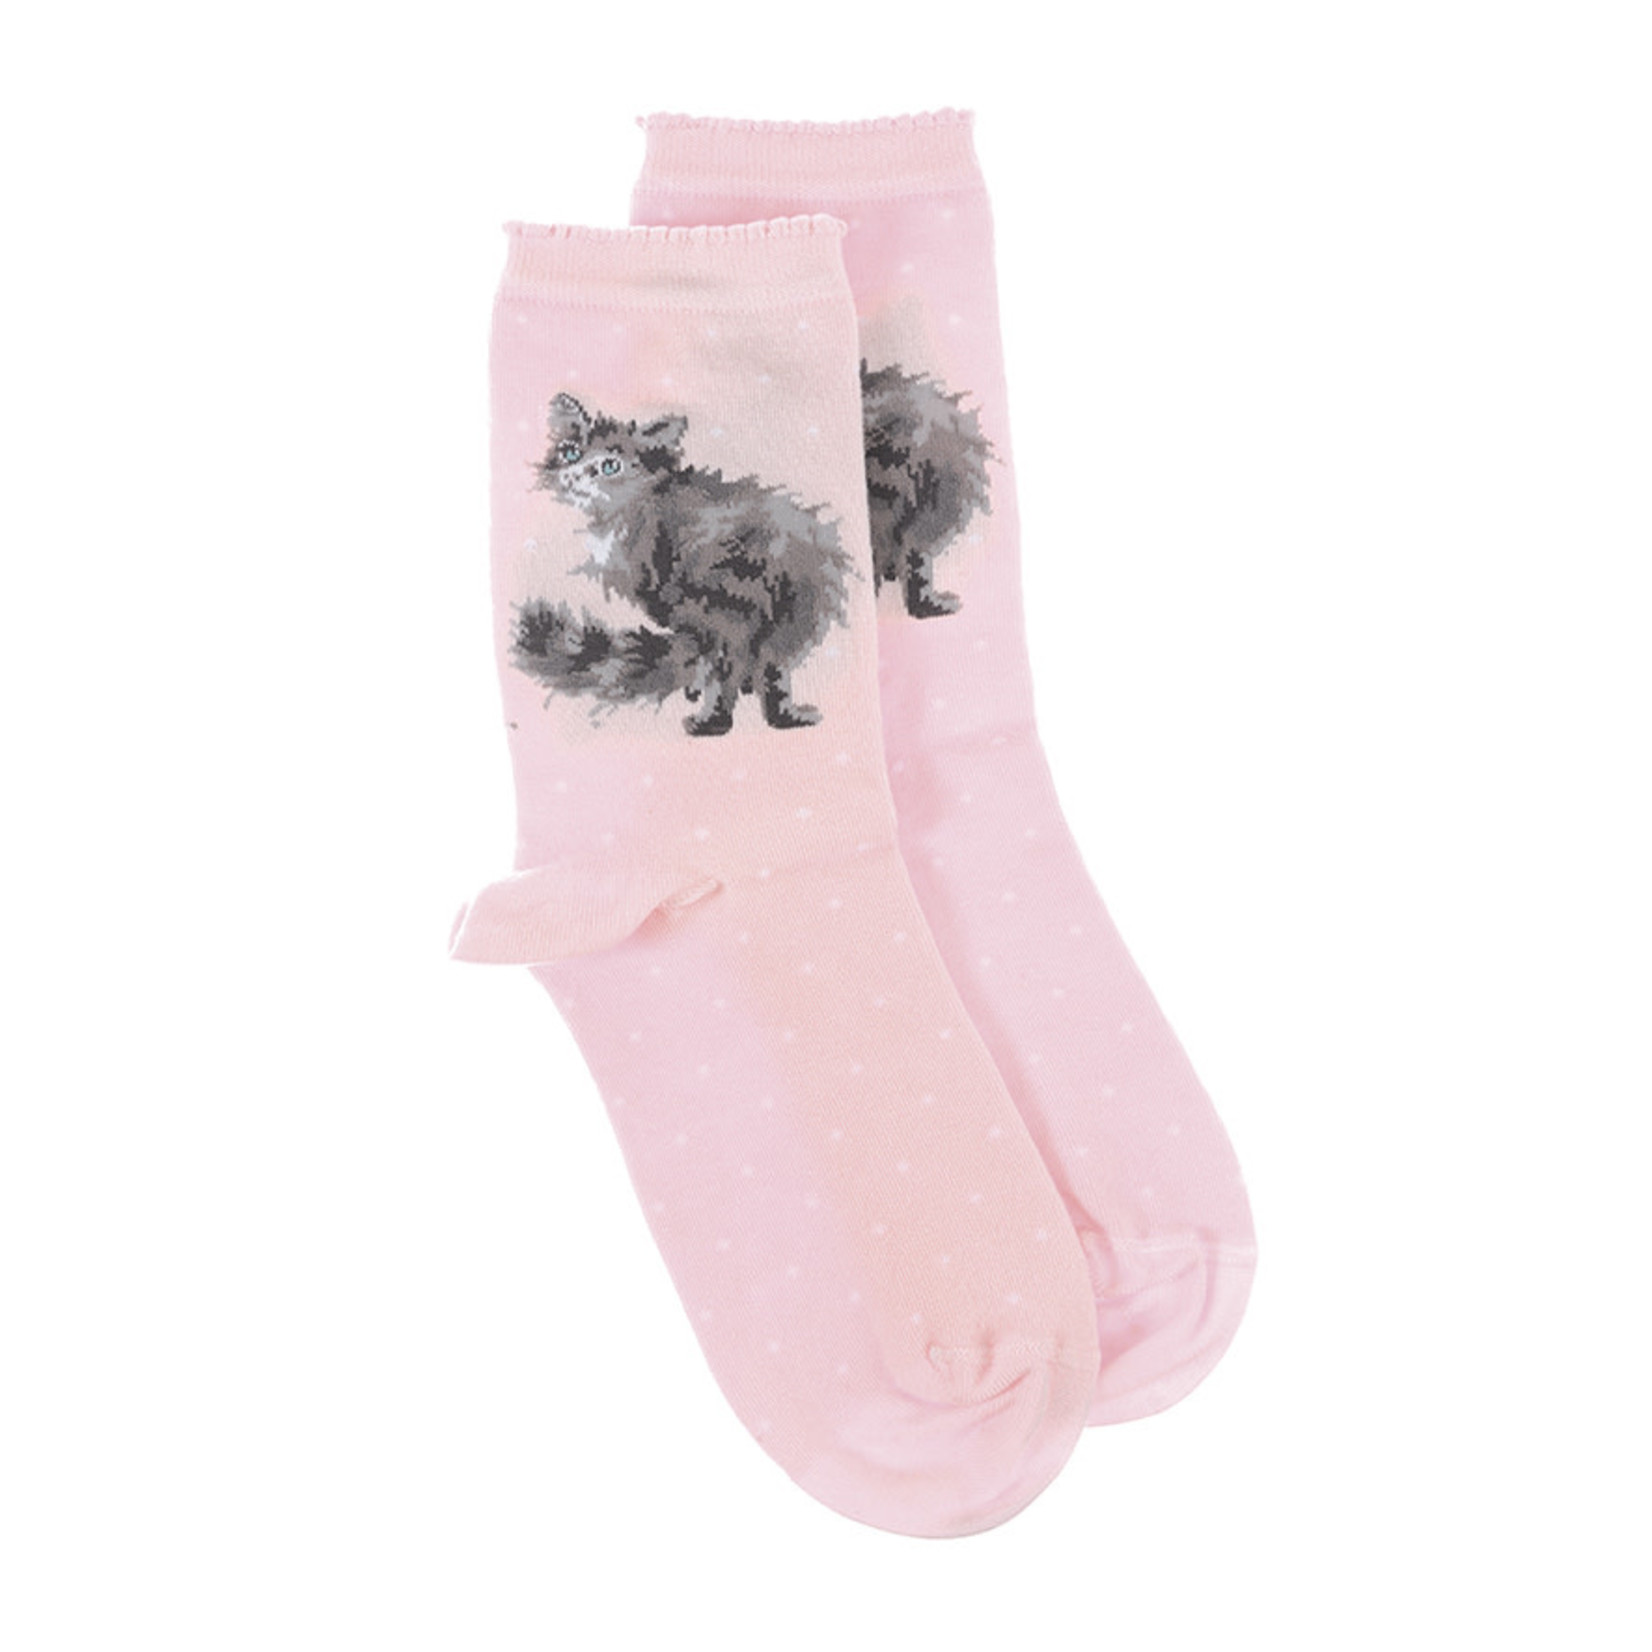 Wrendale Designs Socks - 'Glamour Puss' Cat (SOCK007)